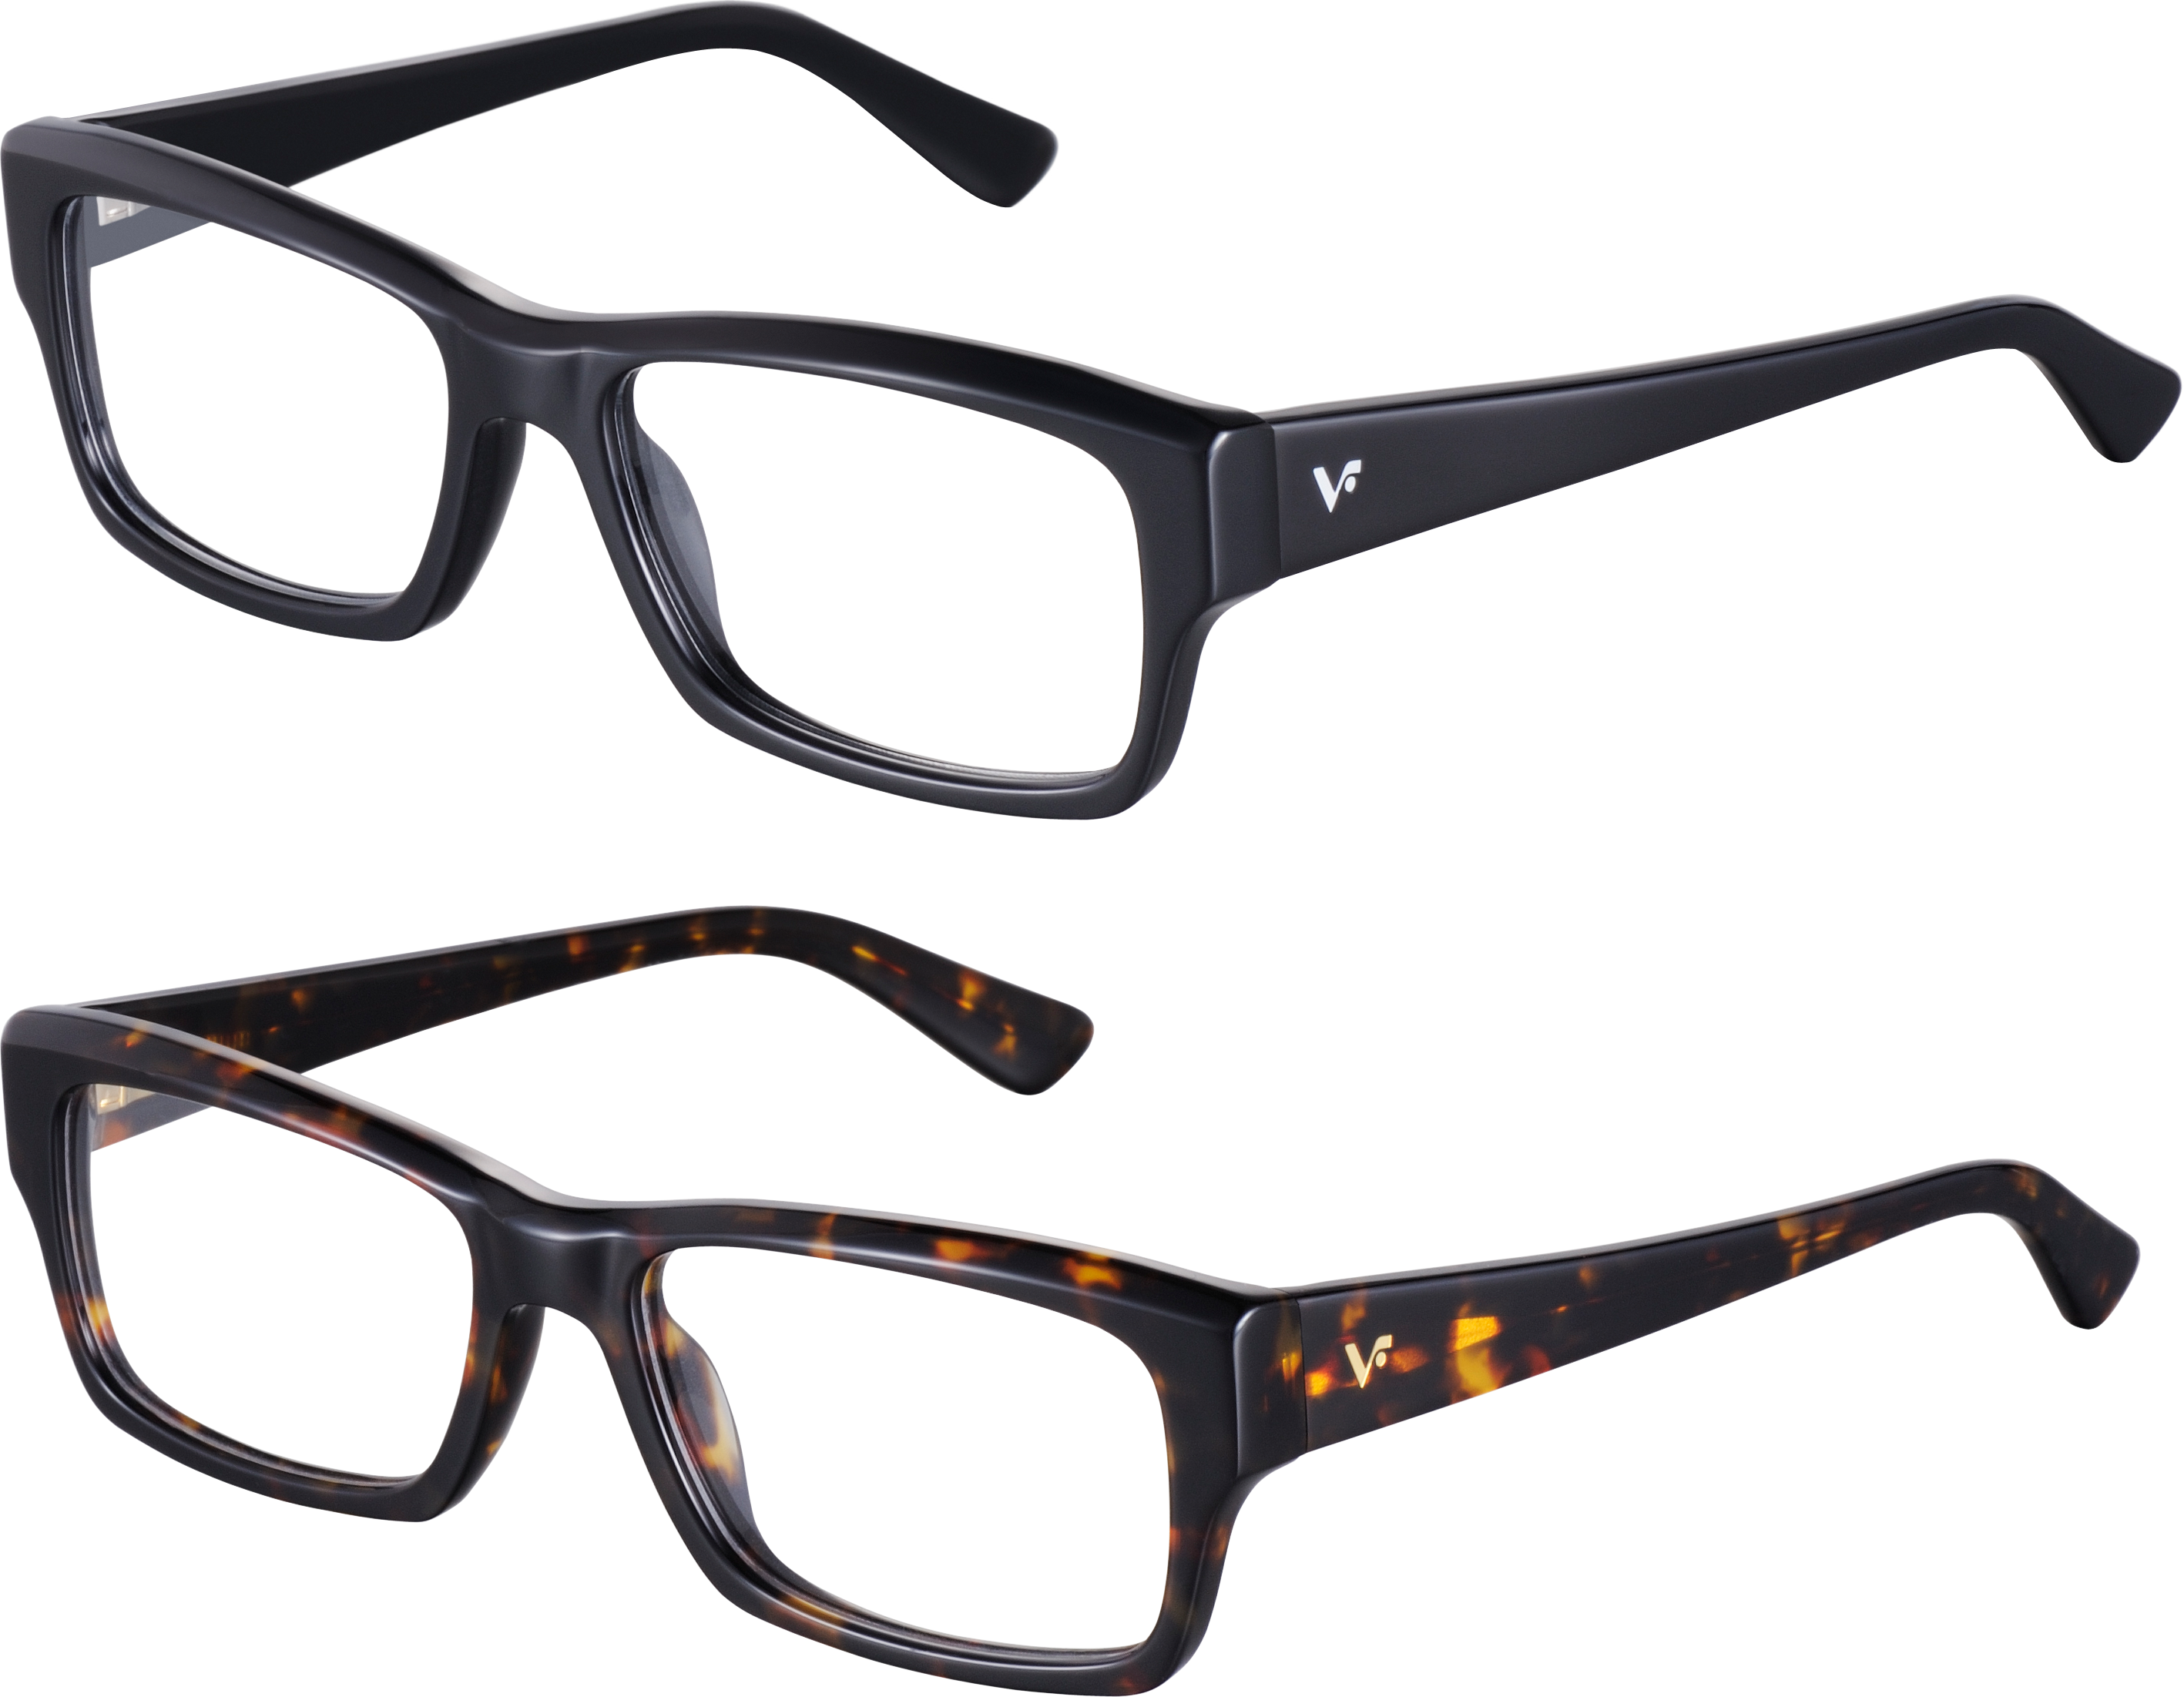 Black Sunglasses Frame PNG Photos